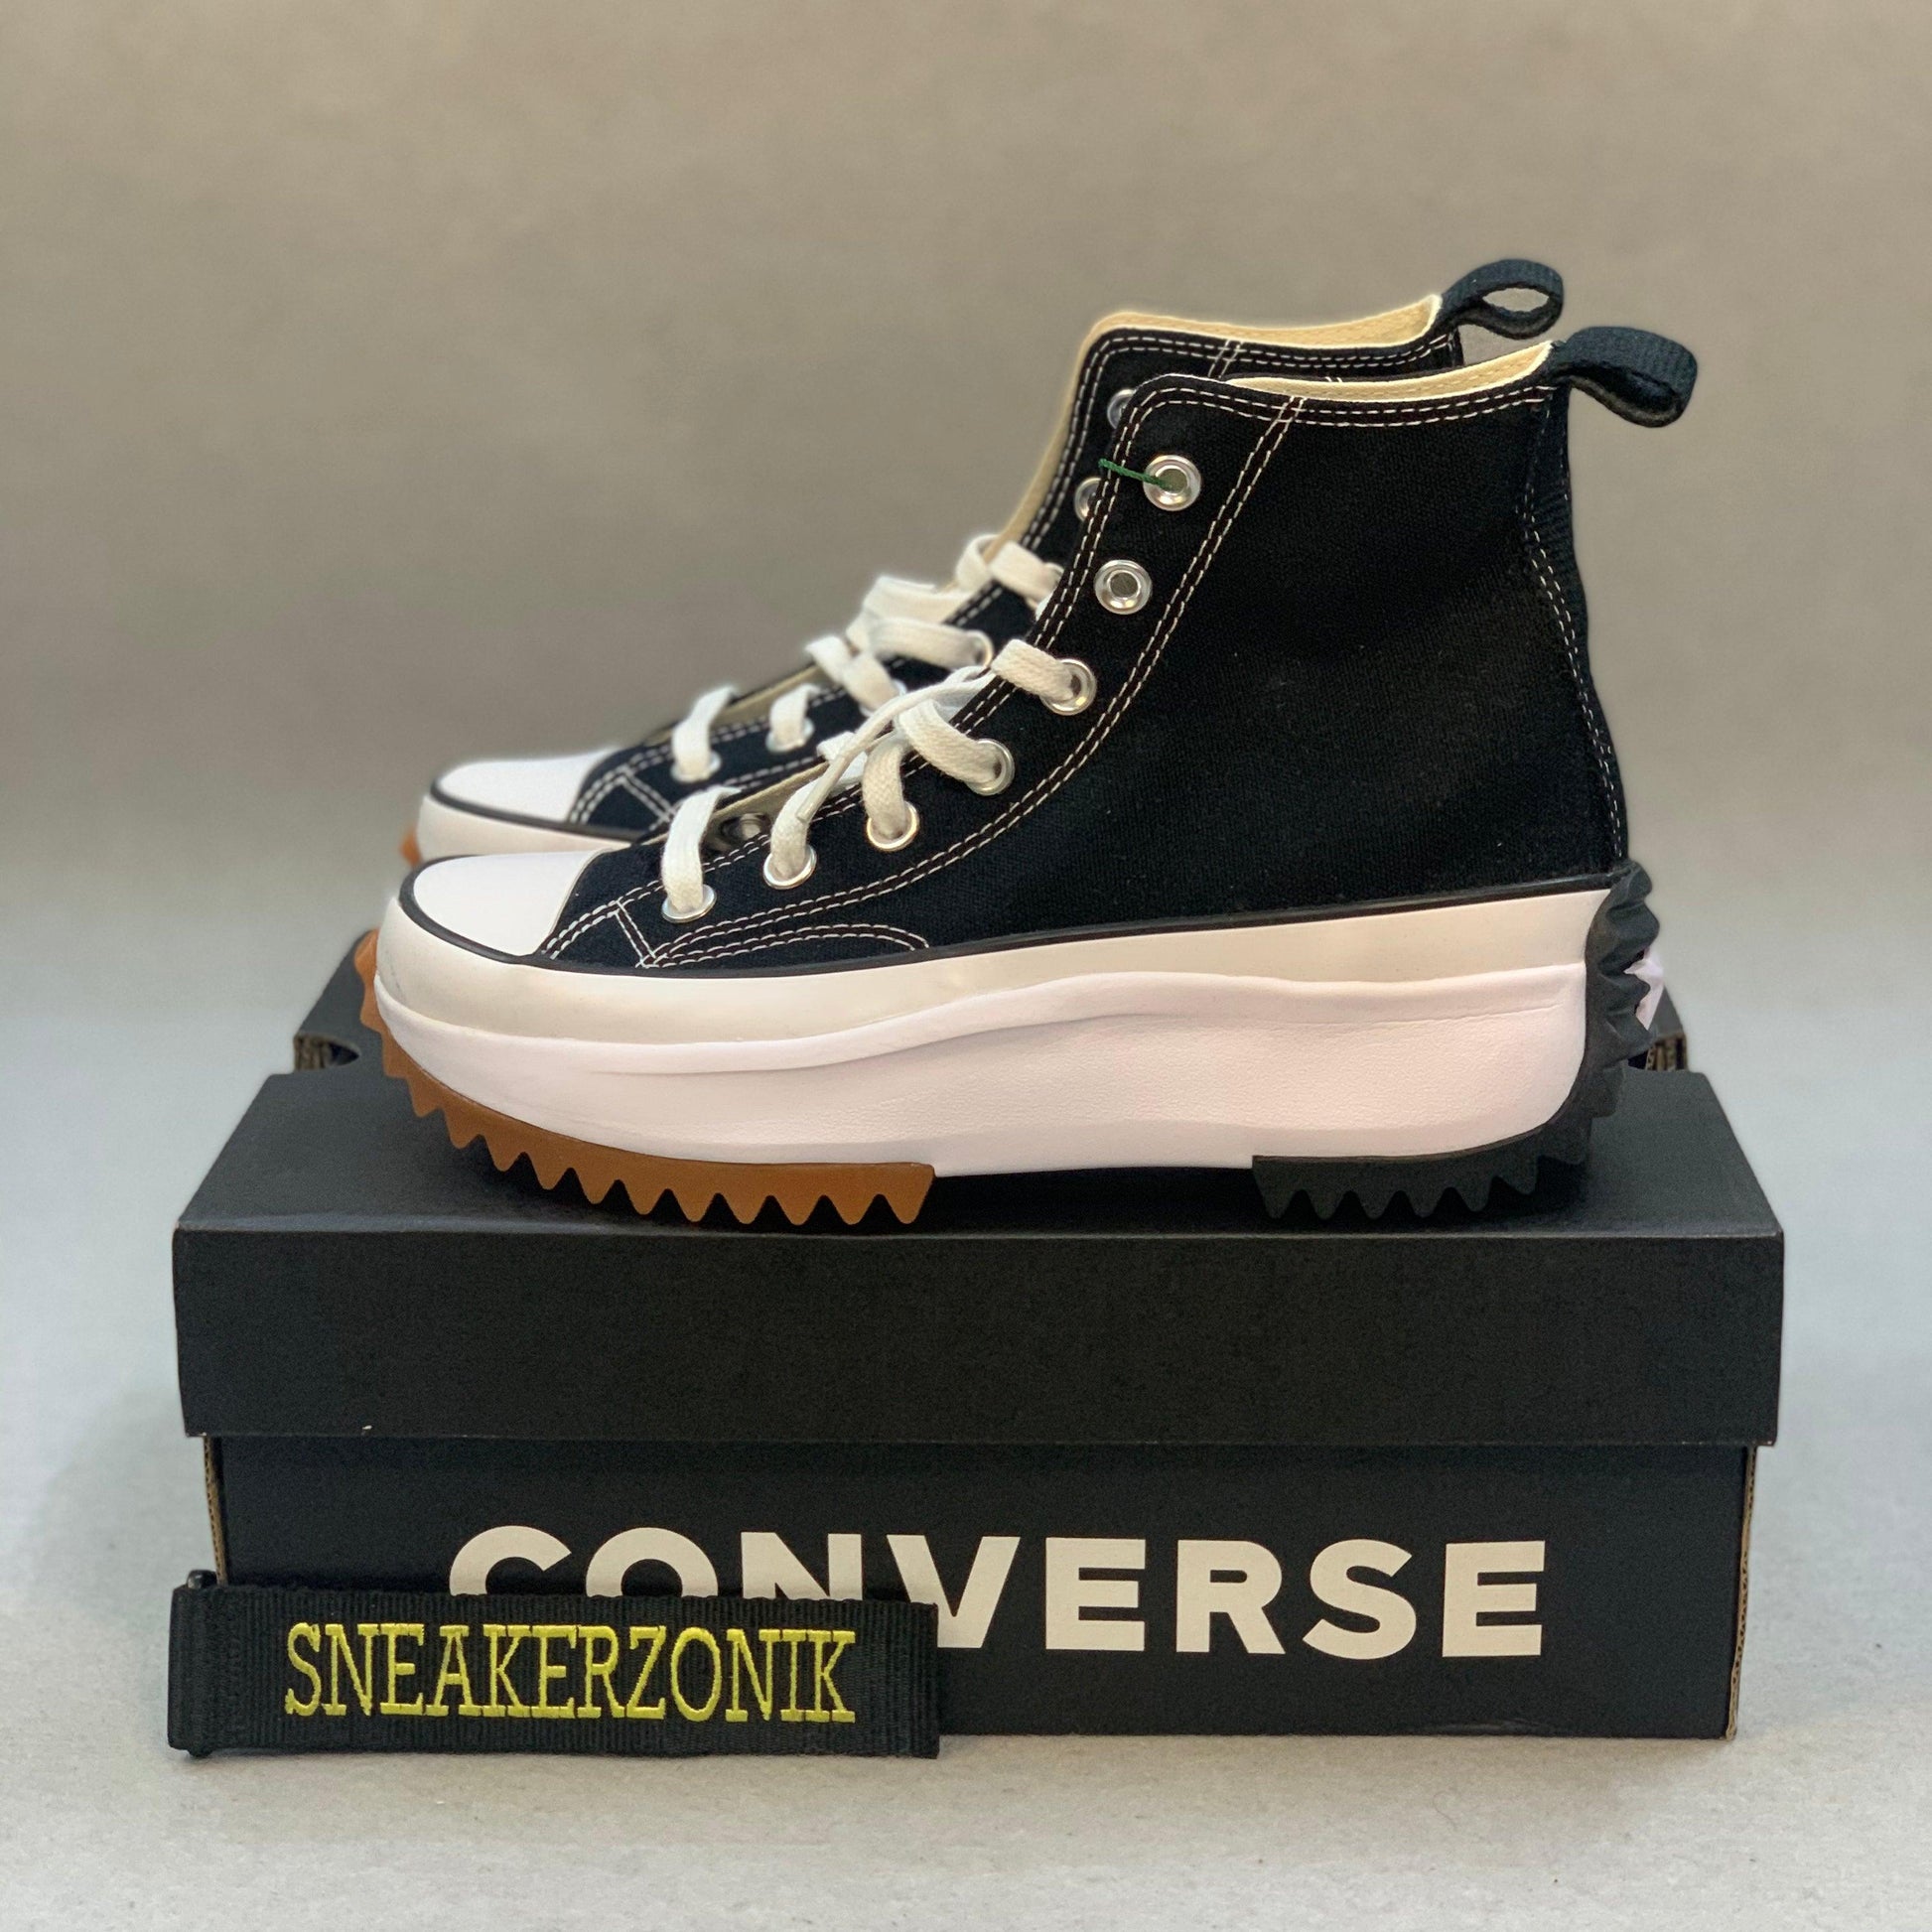 Converse Runstar Hike High Black - sneakerzonik